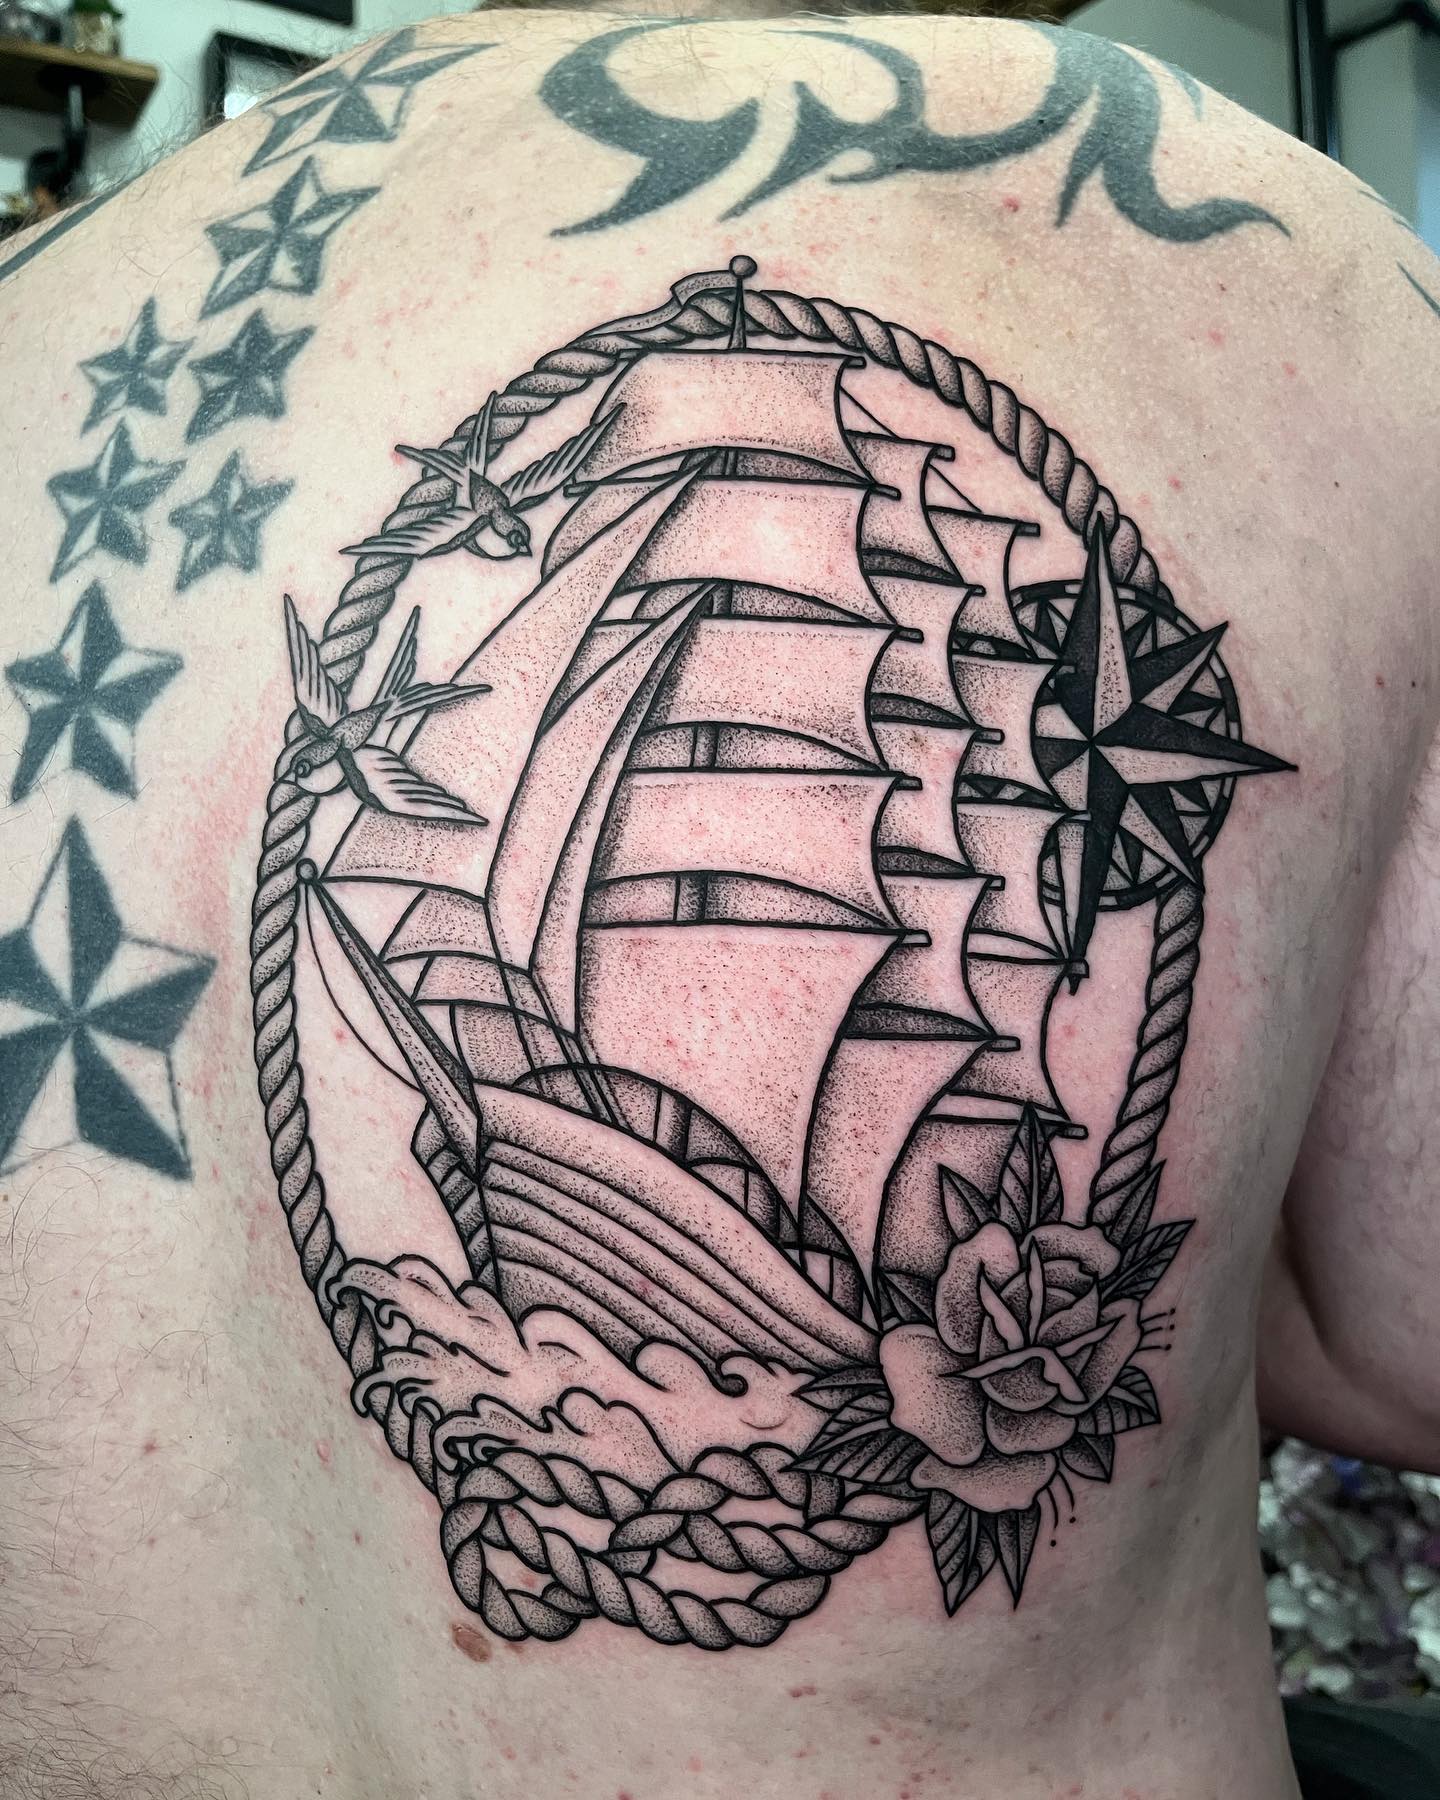 Kraken Ship and Roses Tattoo